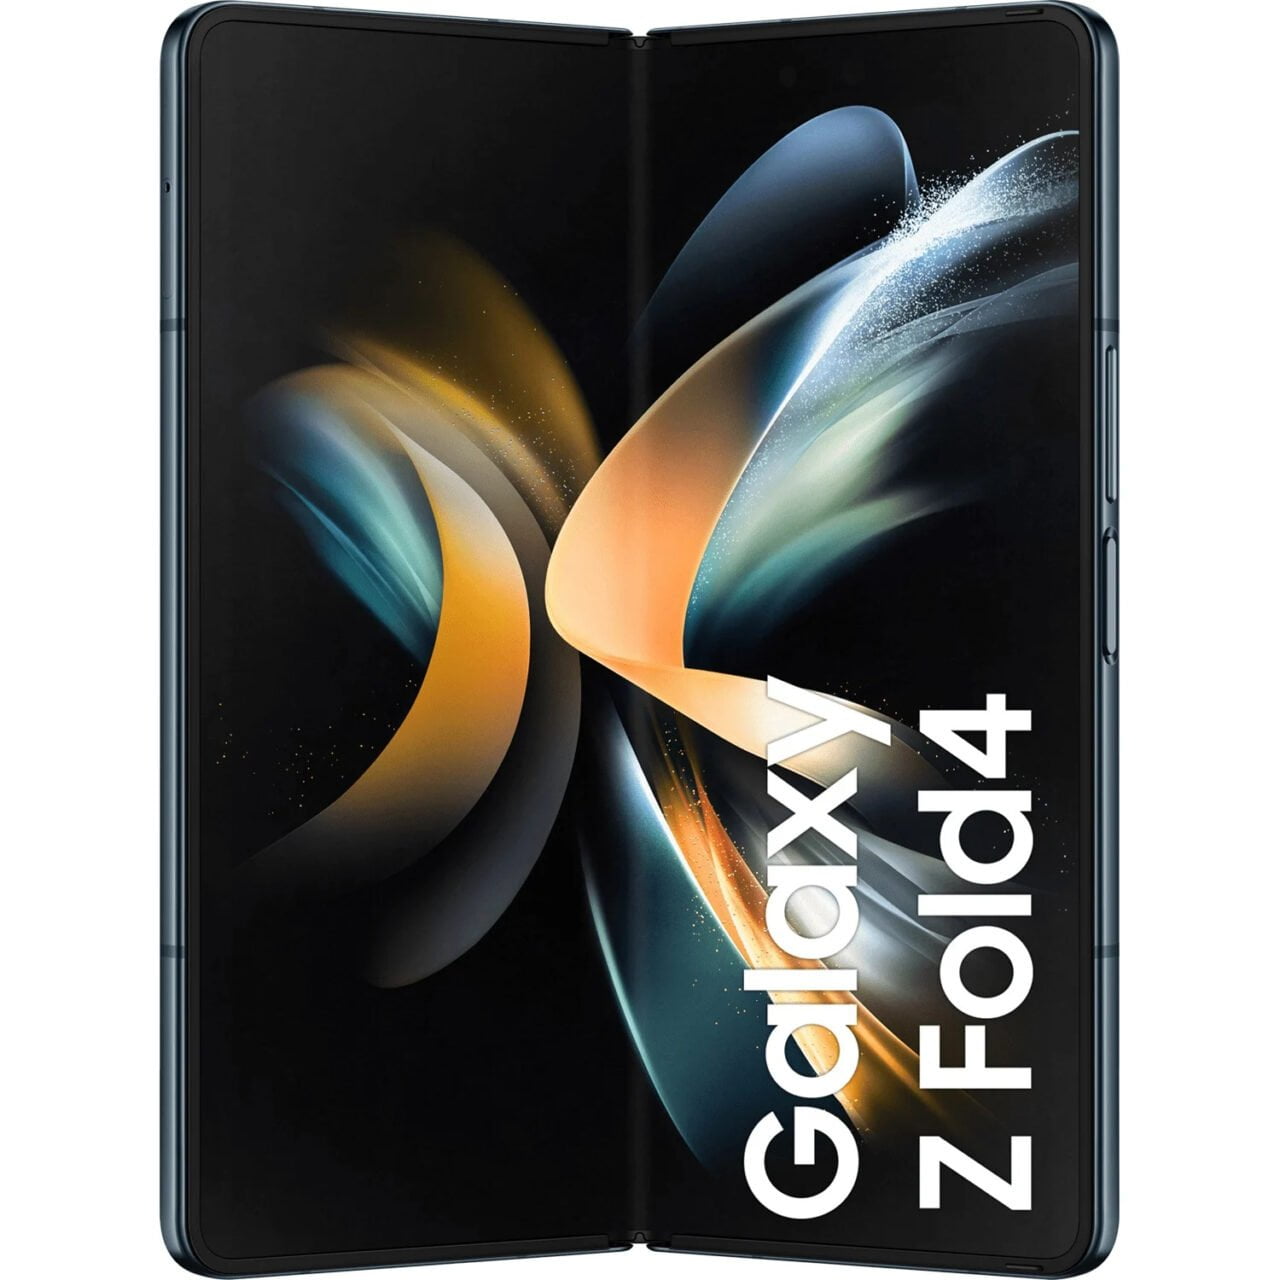 Samsung Galaxy Z Fold4 premiera specyfikacja cena w polsce